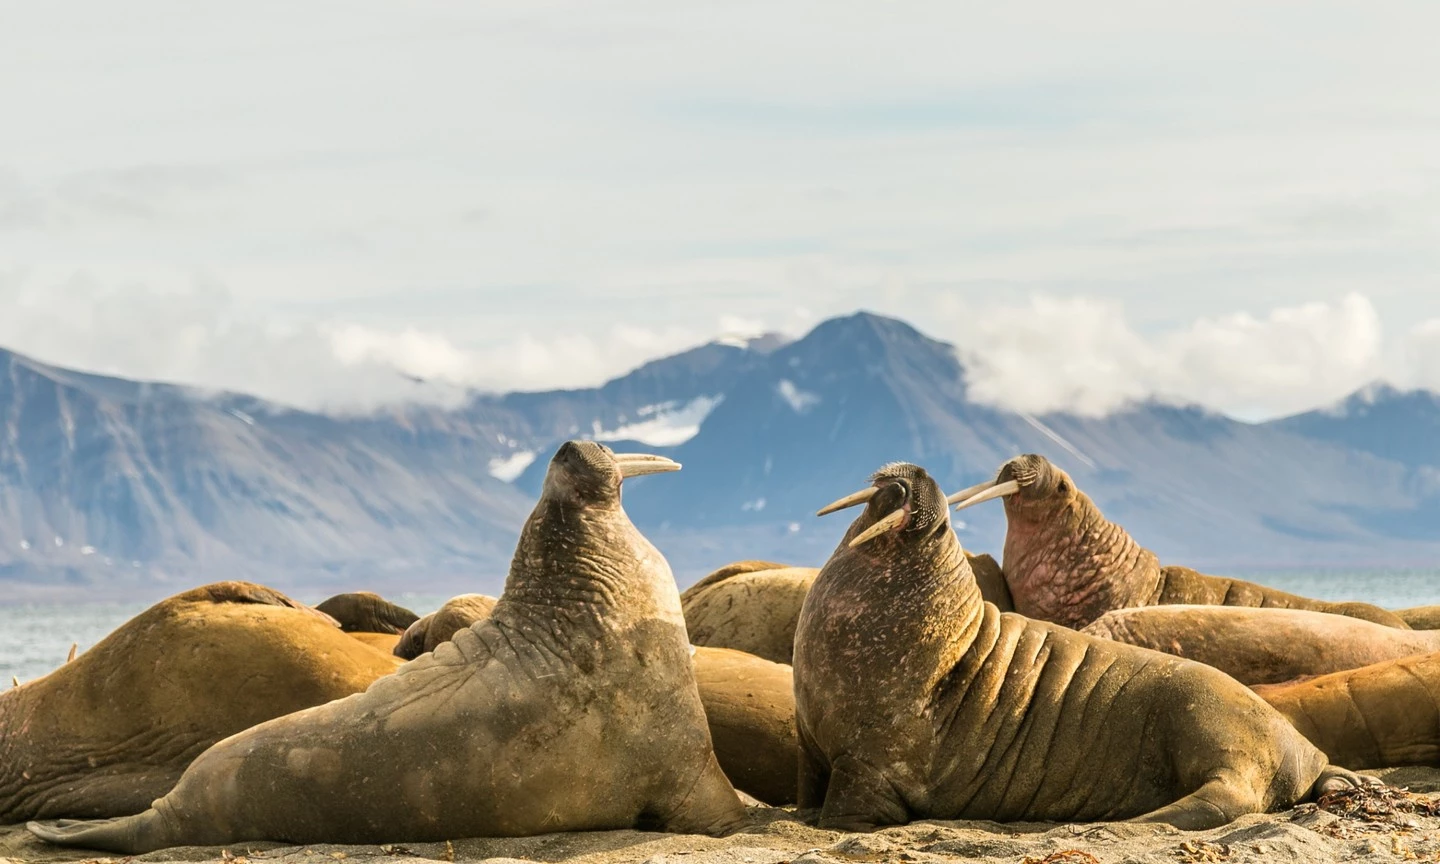 Quần đảo Svarlbad, Na Uy được cho là nơi tốt nhất trên thế giới để ngắm hải mã. Trên đất liền, nhiều công ty du lịch và các điểm tham quan tổ chức tour ngắm những con thú đáng yêu này. Ảnh: Shutterstock.